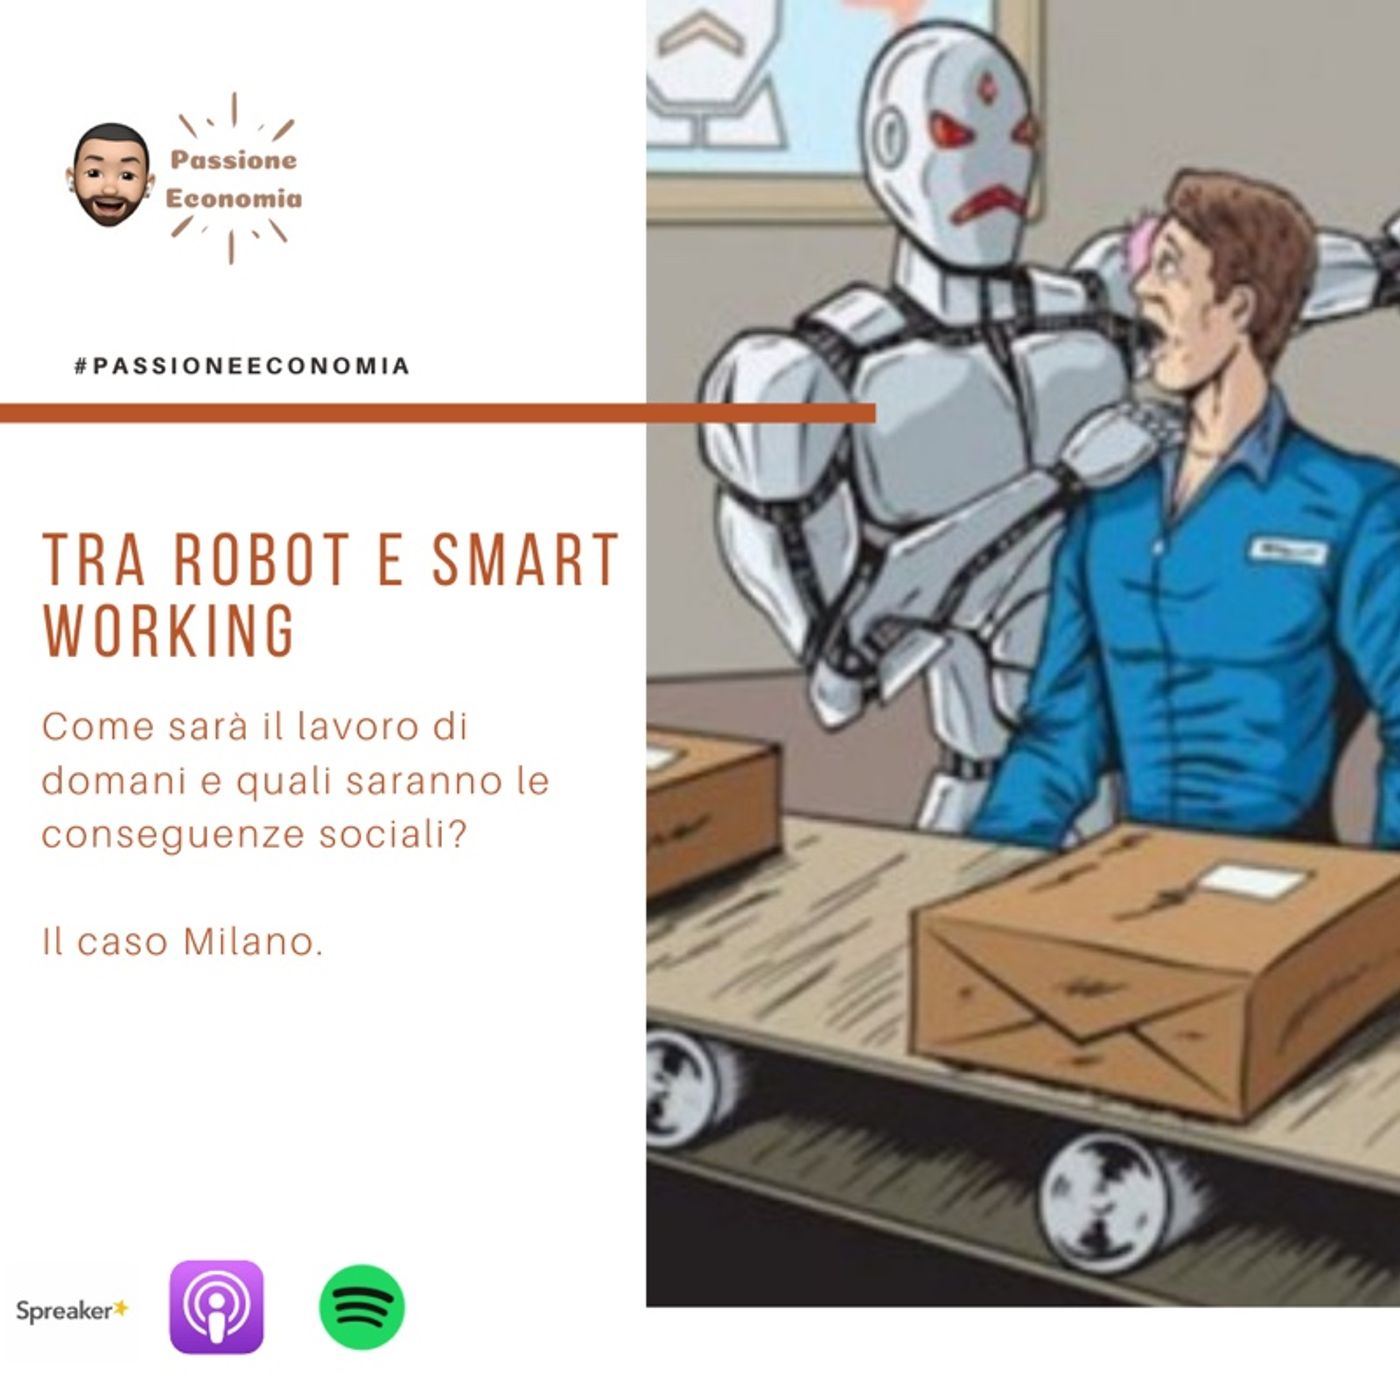 Tra Smart Working e Robot, come sta cambiando il lavoro di oggi.